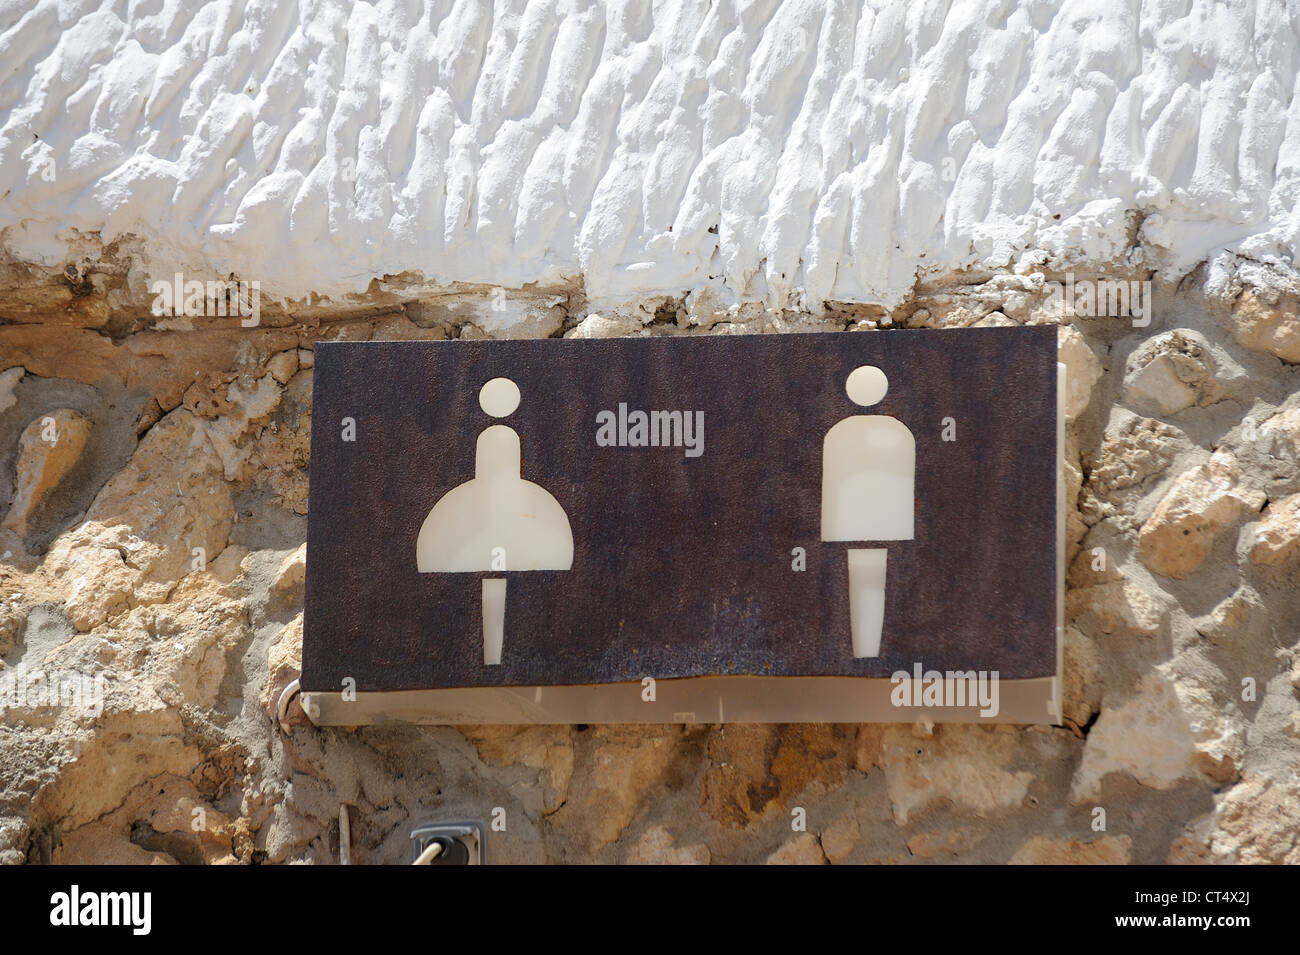 Toilettes hommes et femmes des Baléares espagne Minorque signes Banque D'Images